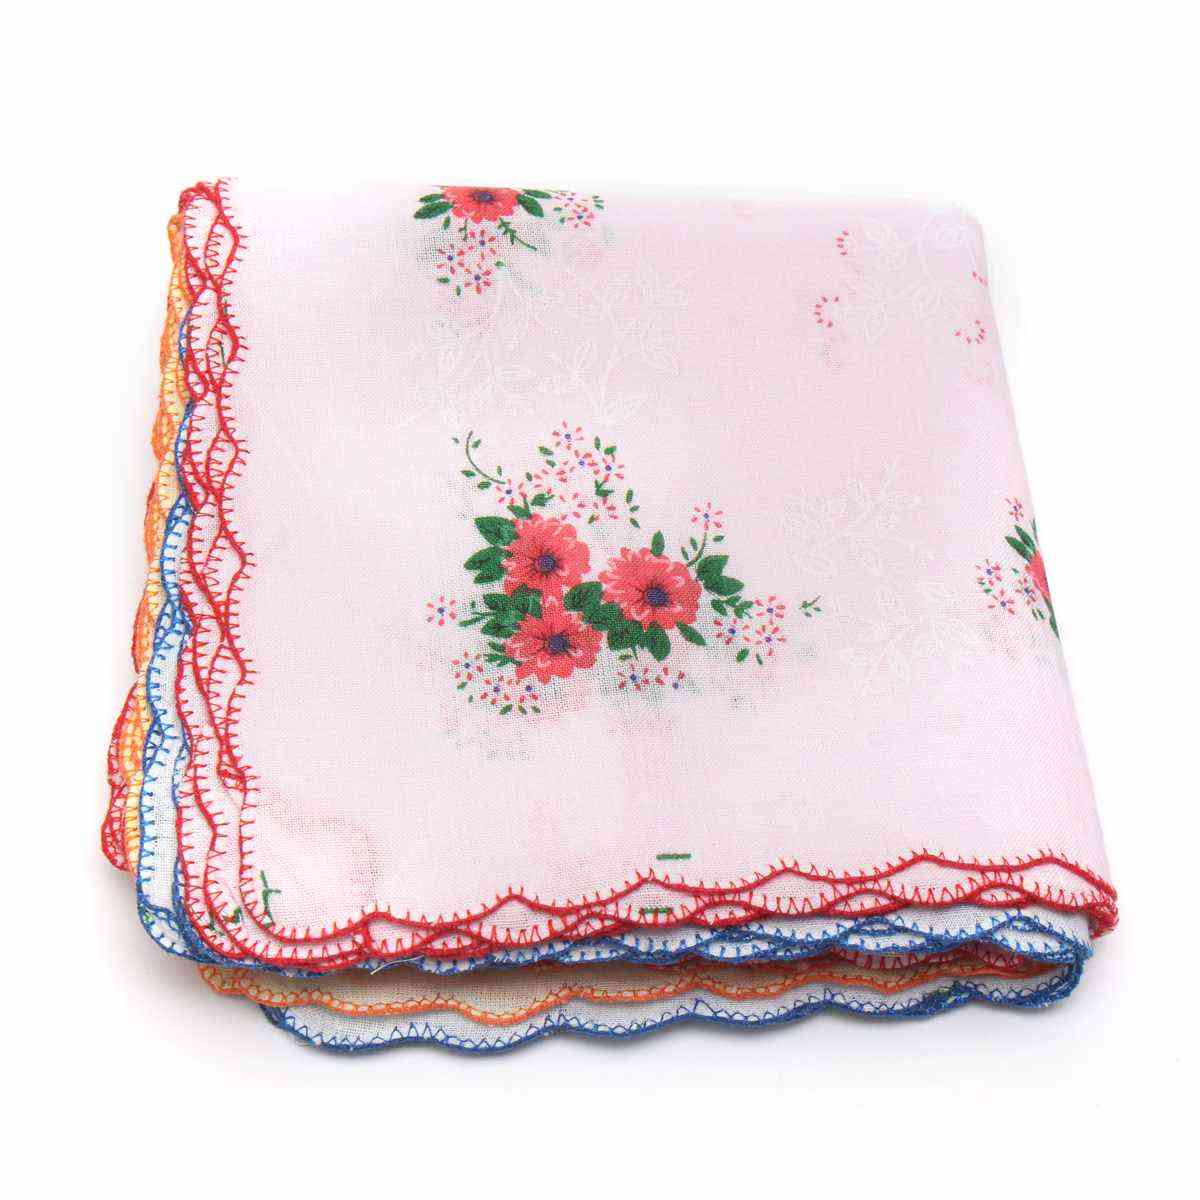 Fazzoletti da donna con stampa floreale vintage - fazzoletti quadrati di asciugamani per donna